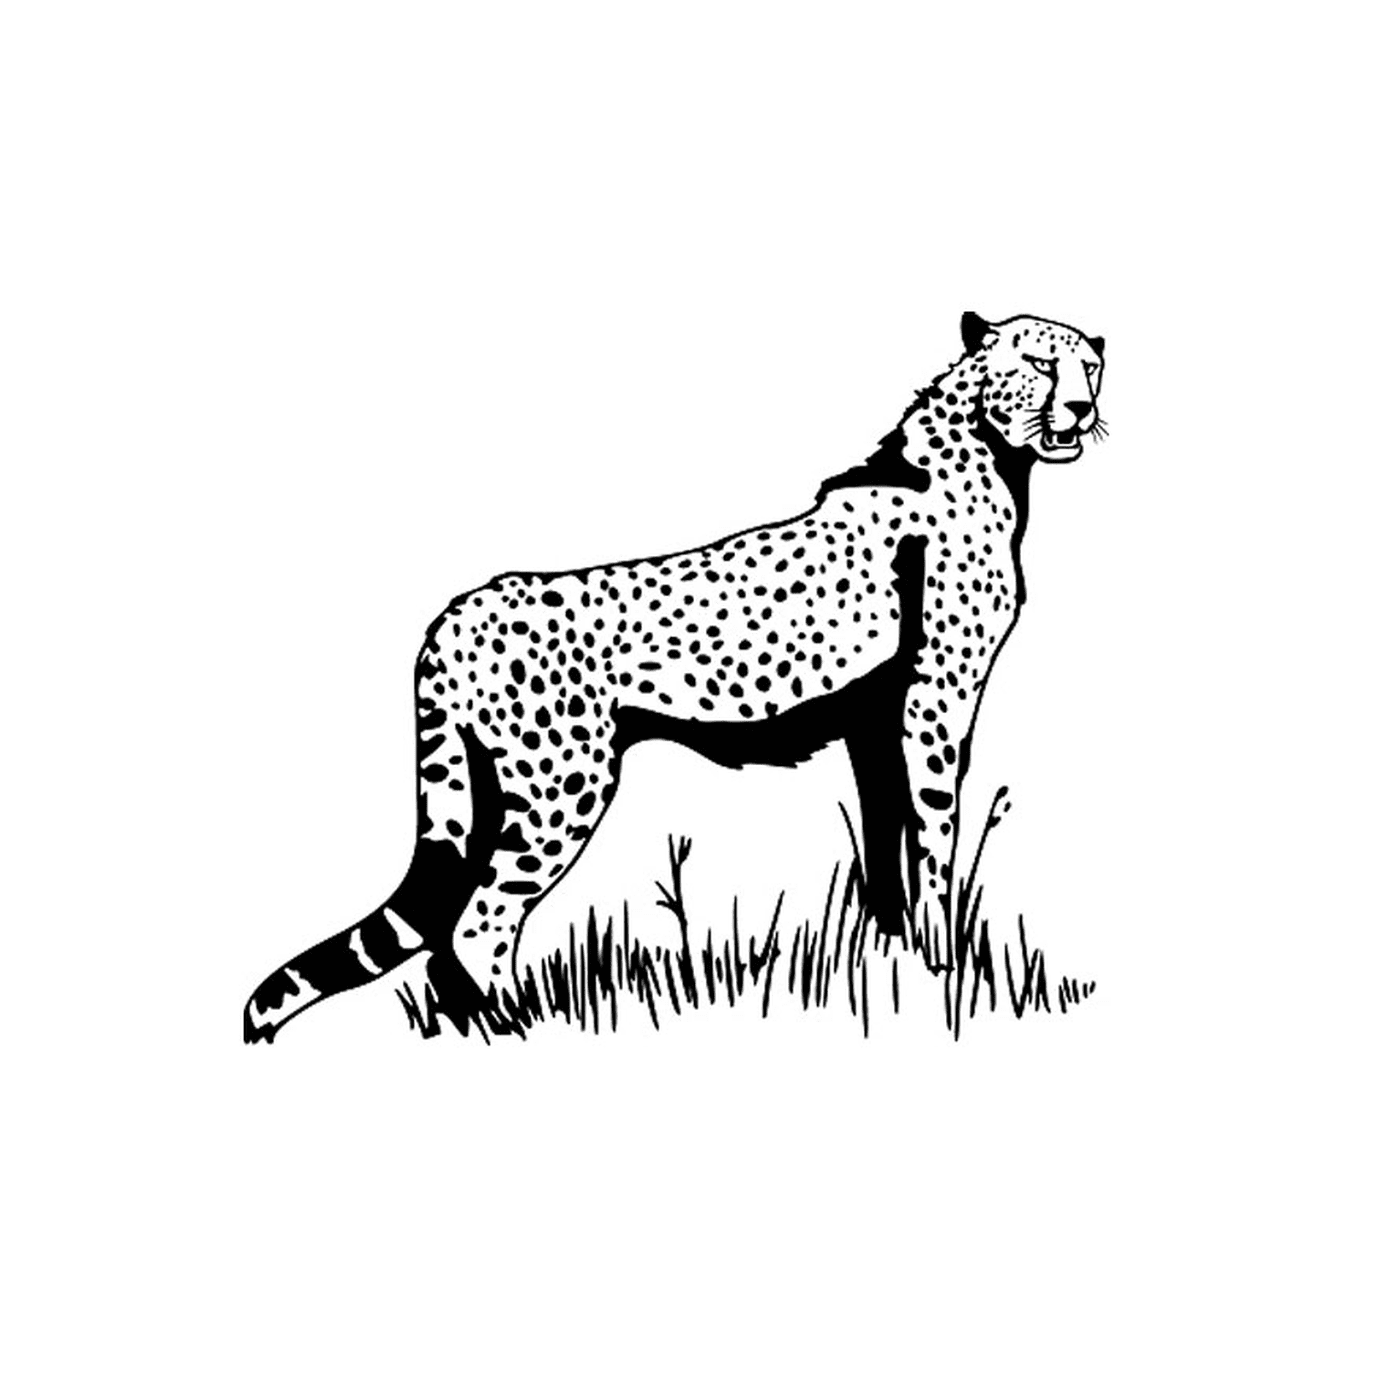  A cheetah 